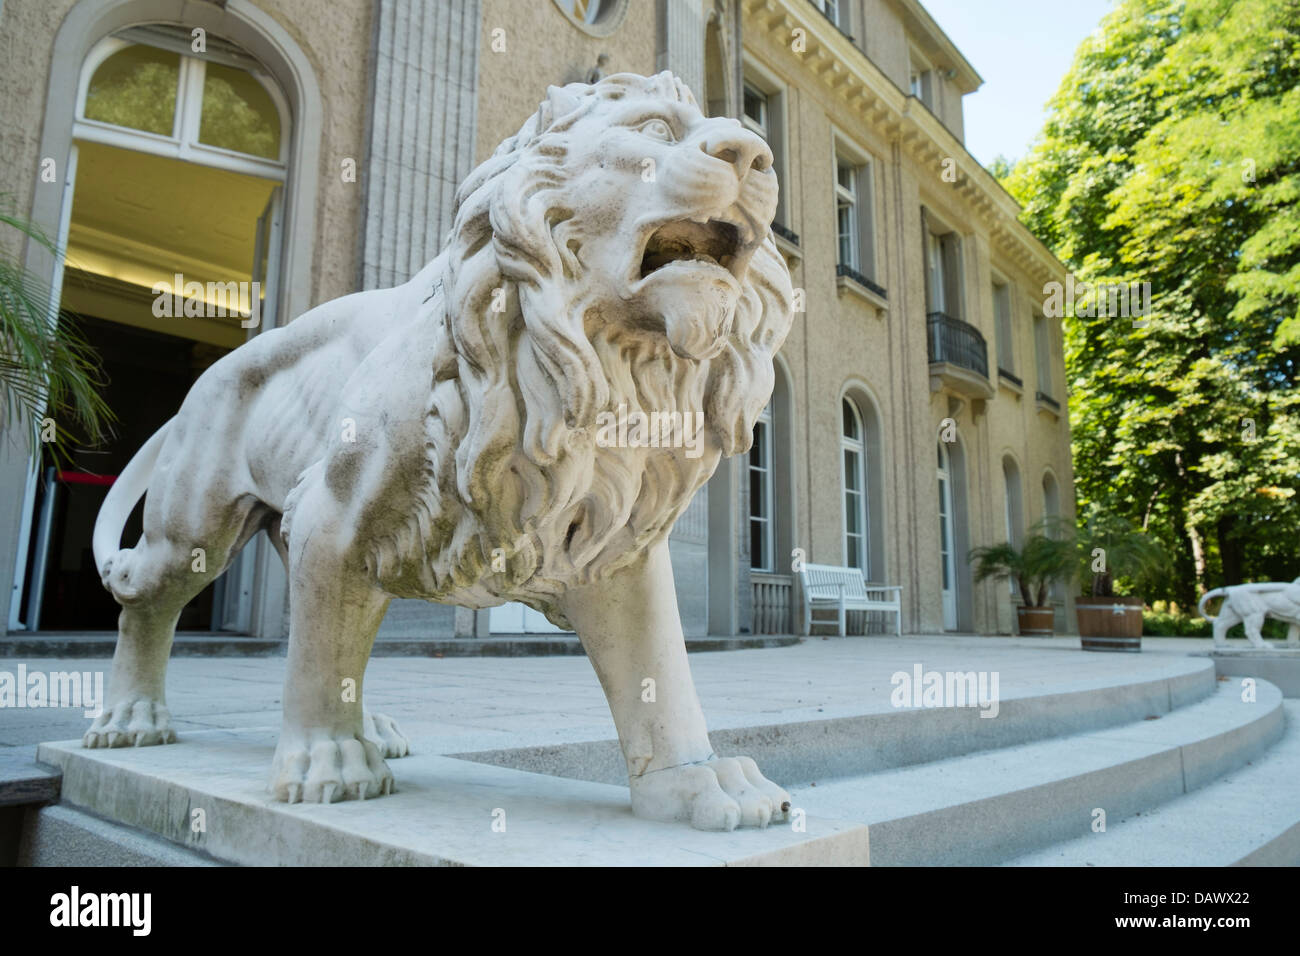 Sculpture du Lion de la villa où a eu lieu la conférence de Wannsee durant la Seconde Guerre mondiale à Berlin Allemagne Banque D'Images